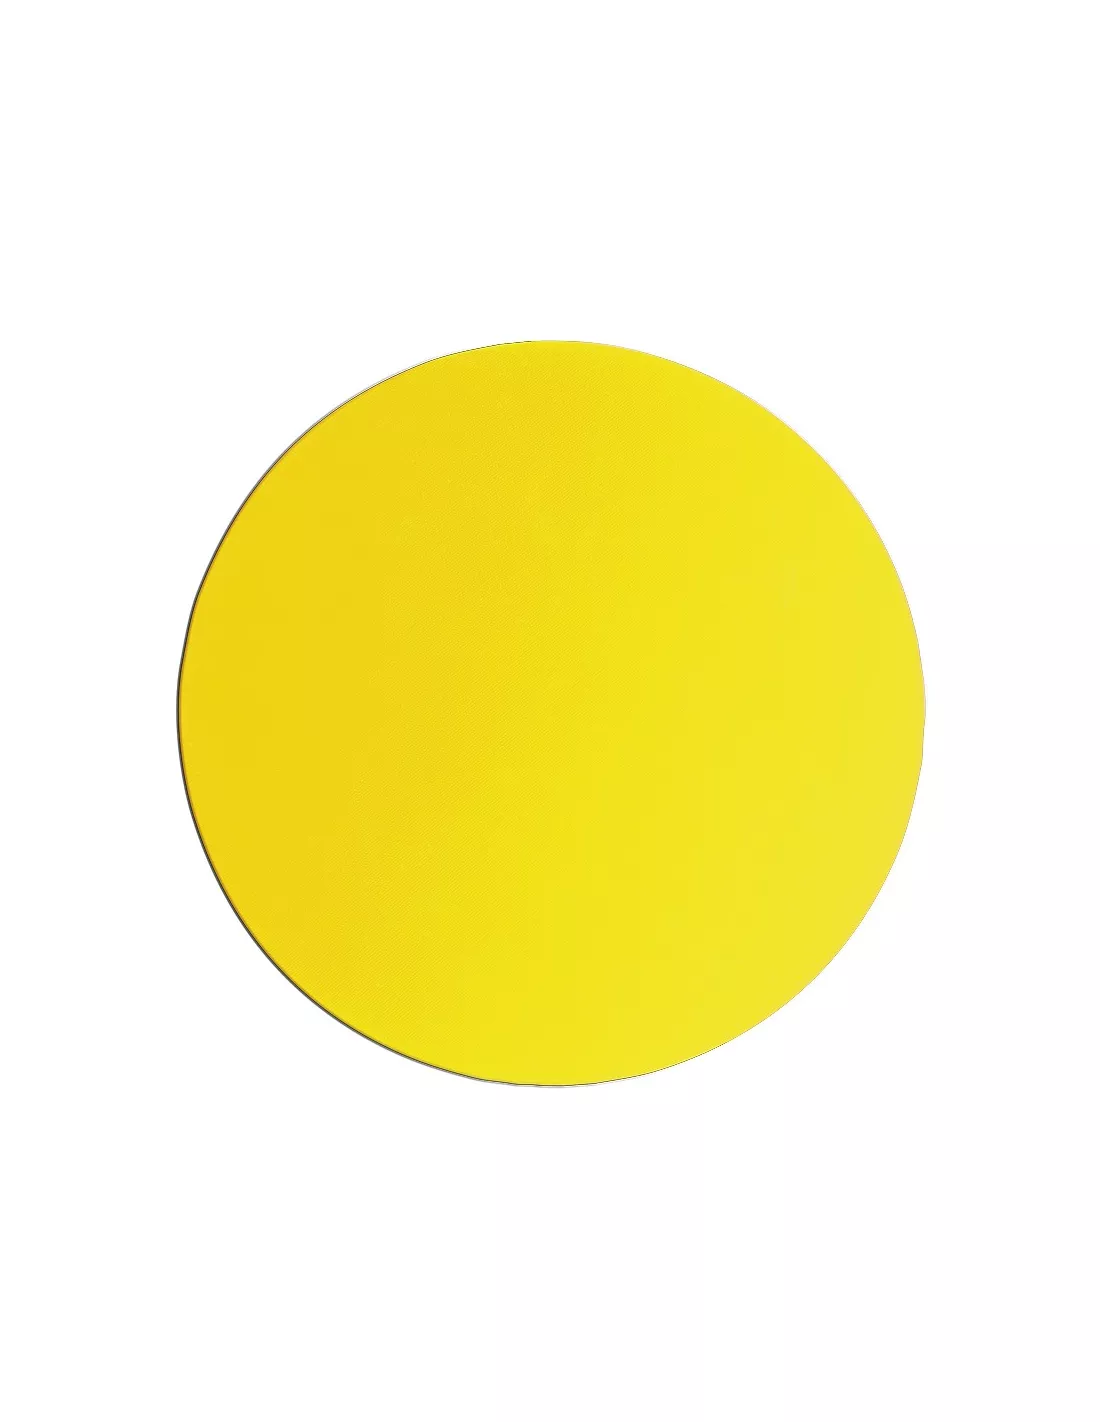 alfombrilla personalizada de silicona amarilla